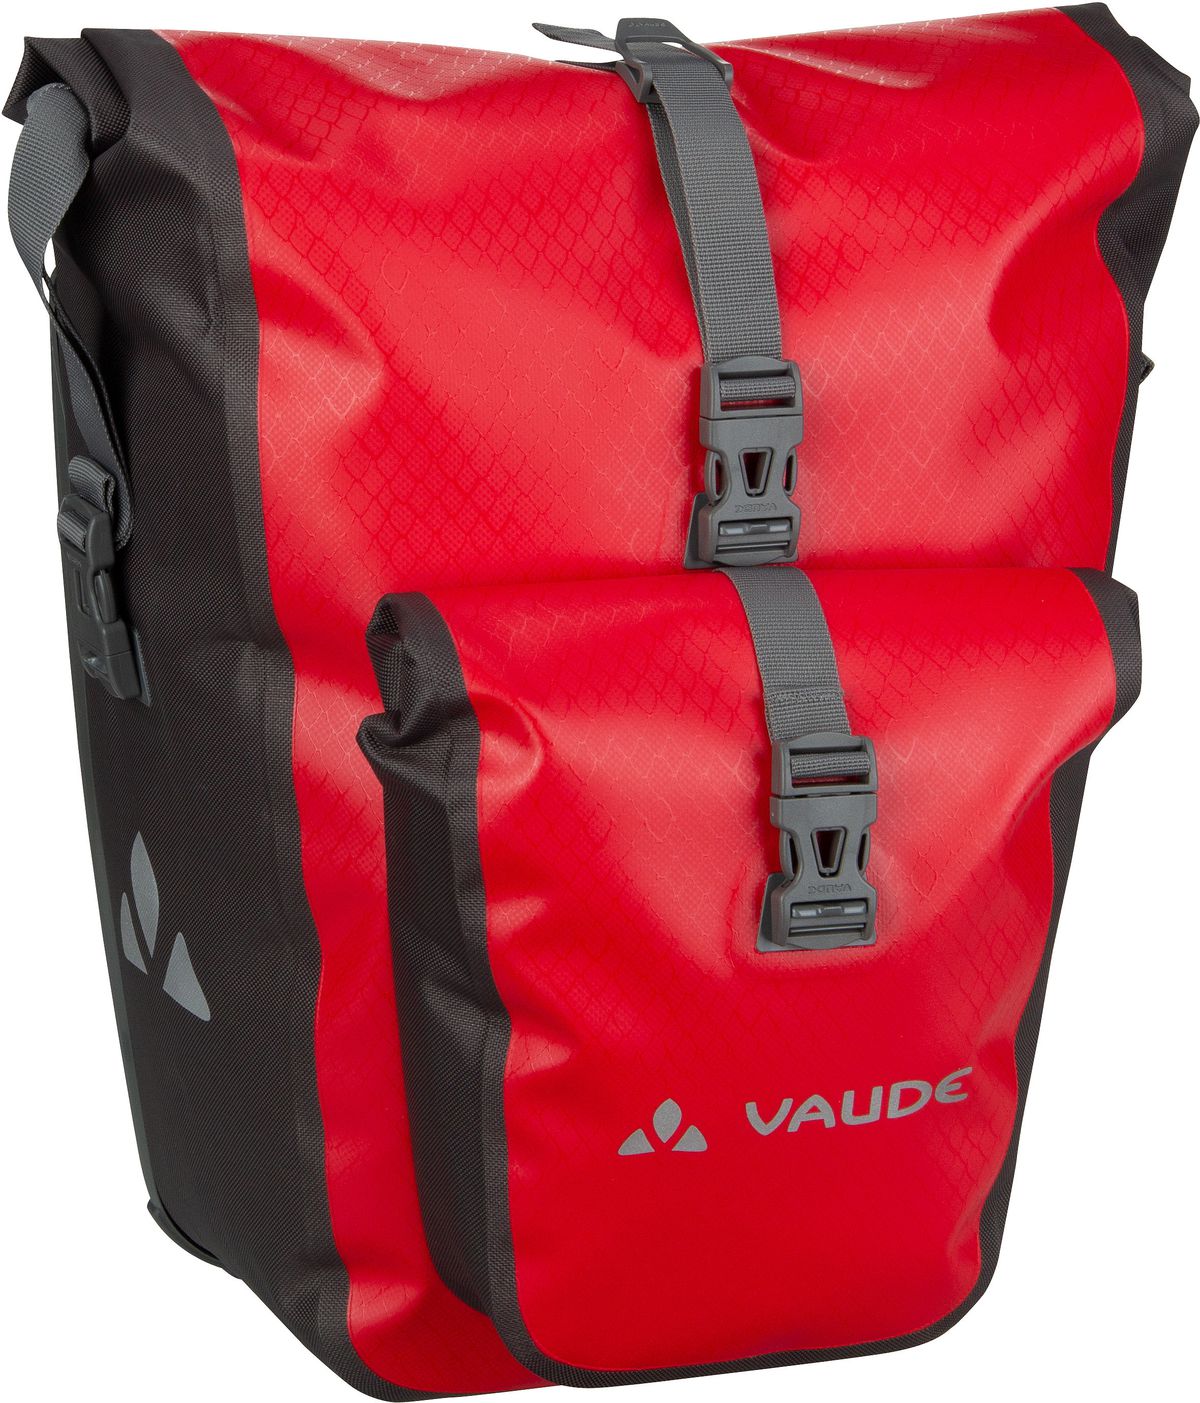 Vaude Aqua Back Plus Single - Red